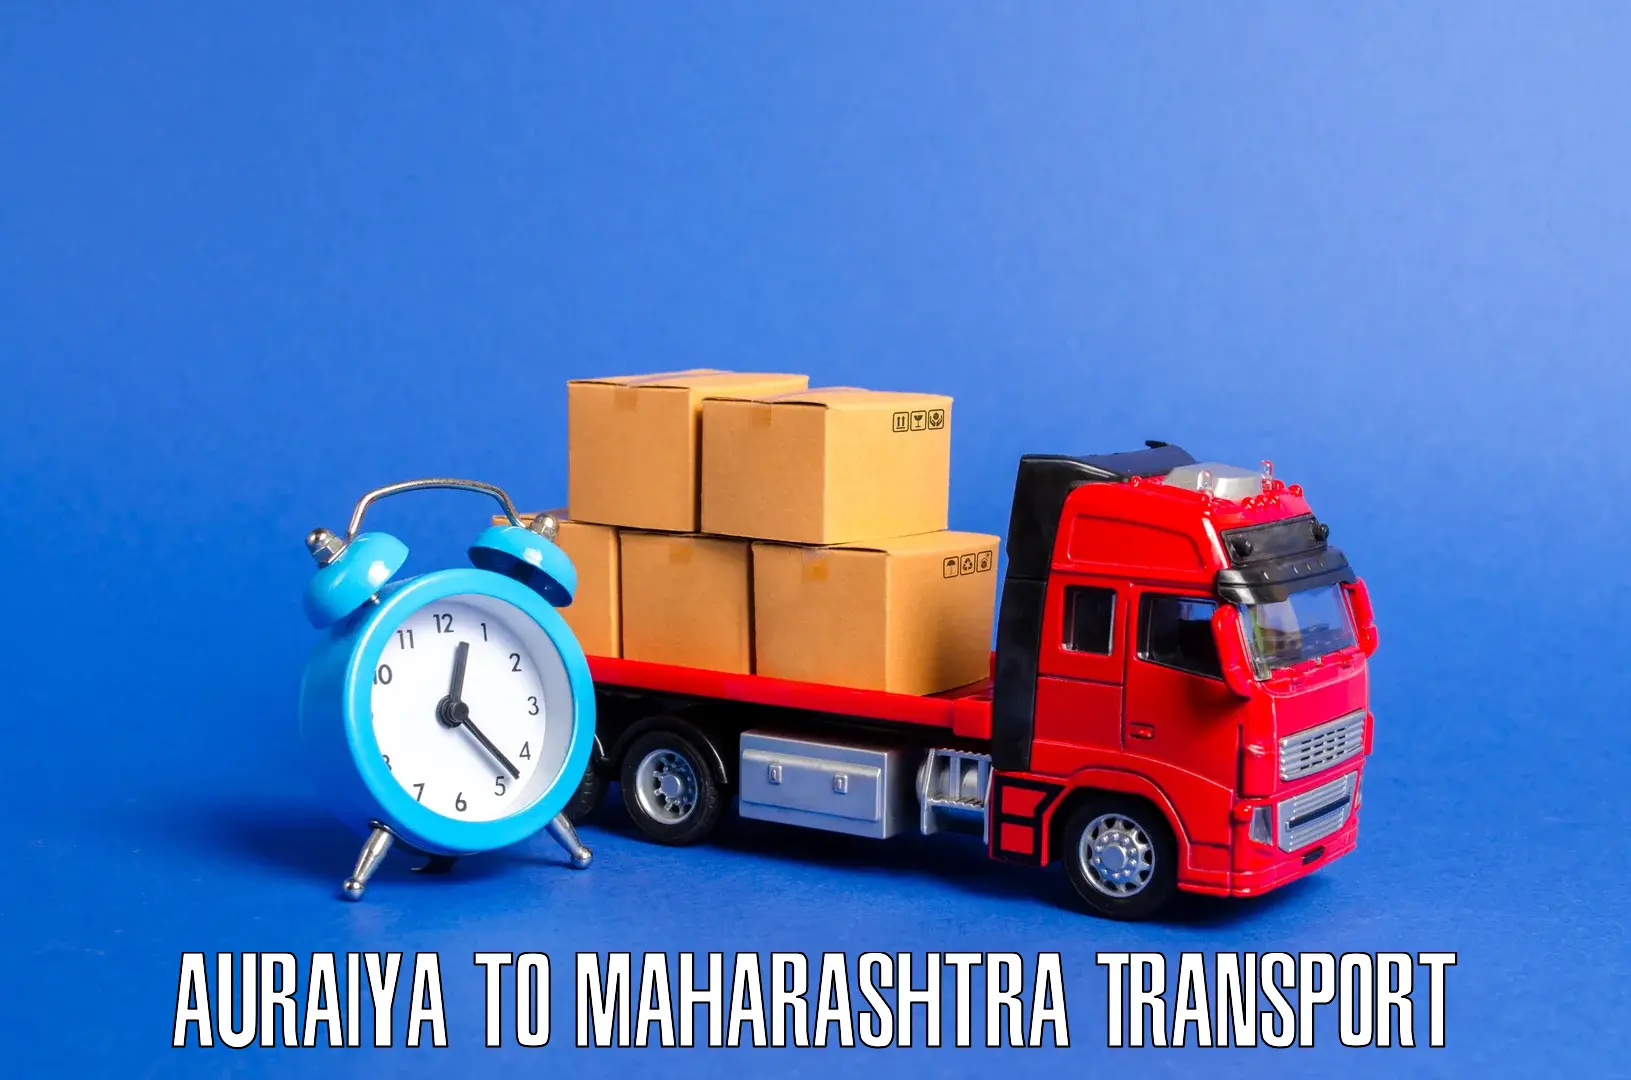 Transport shared services Auraiya to Solapur